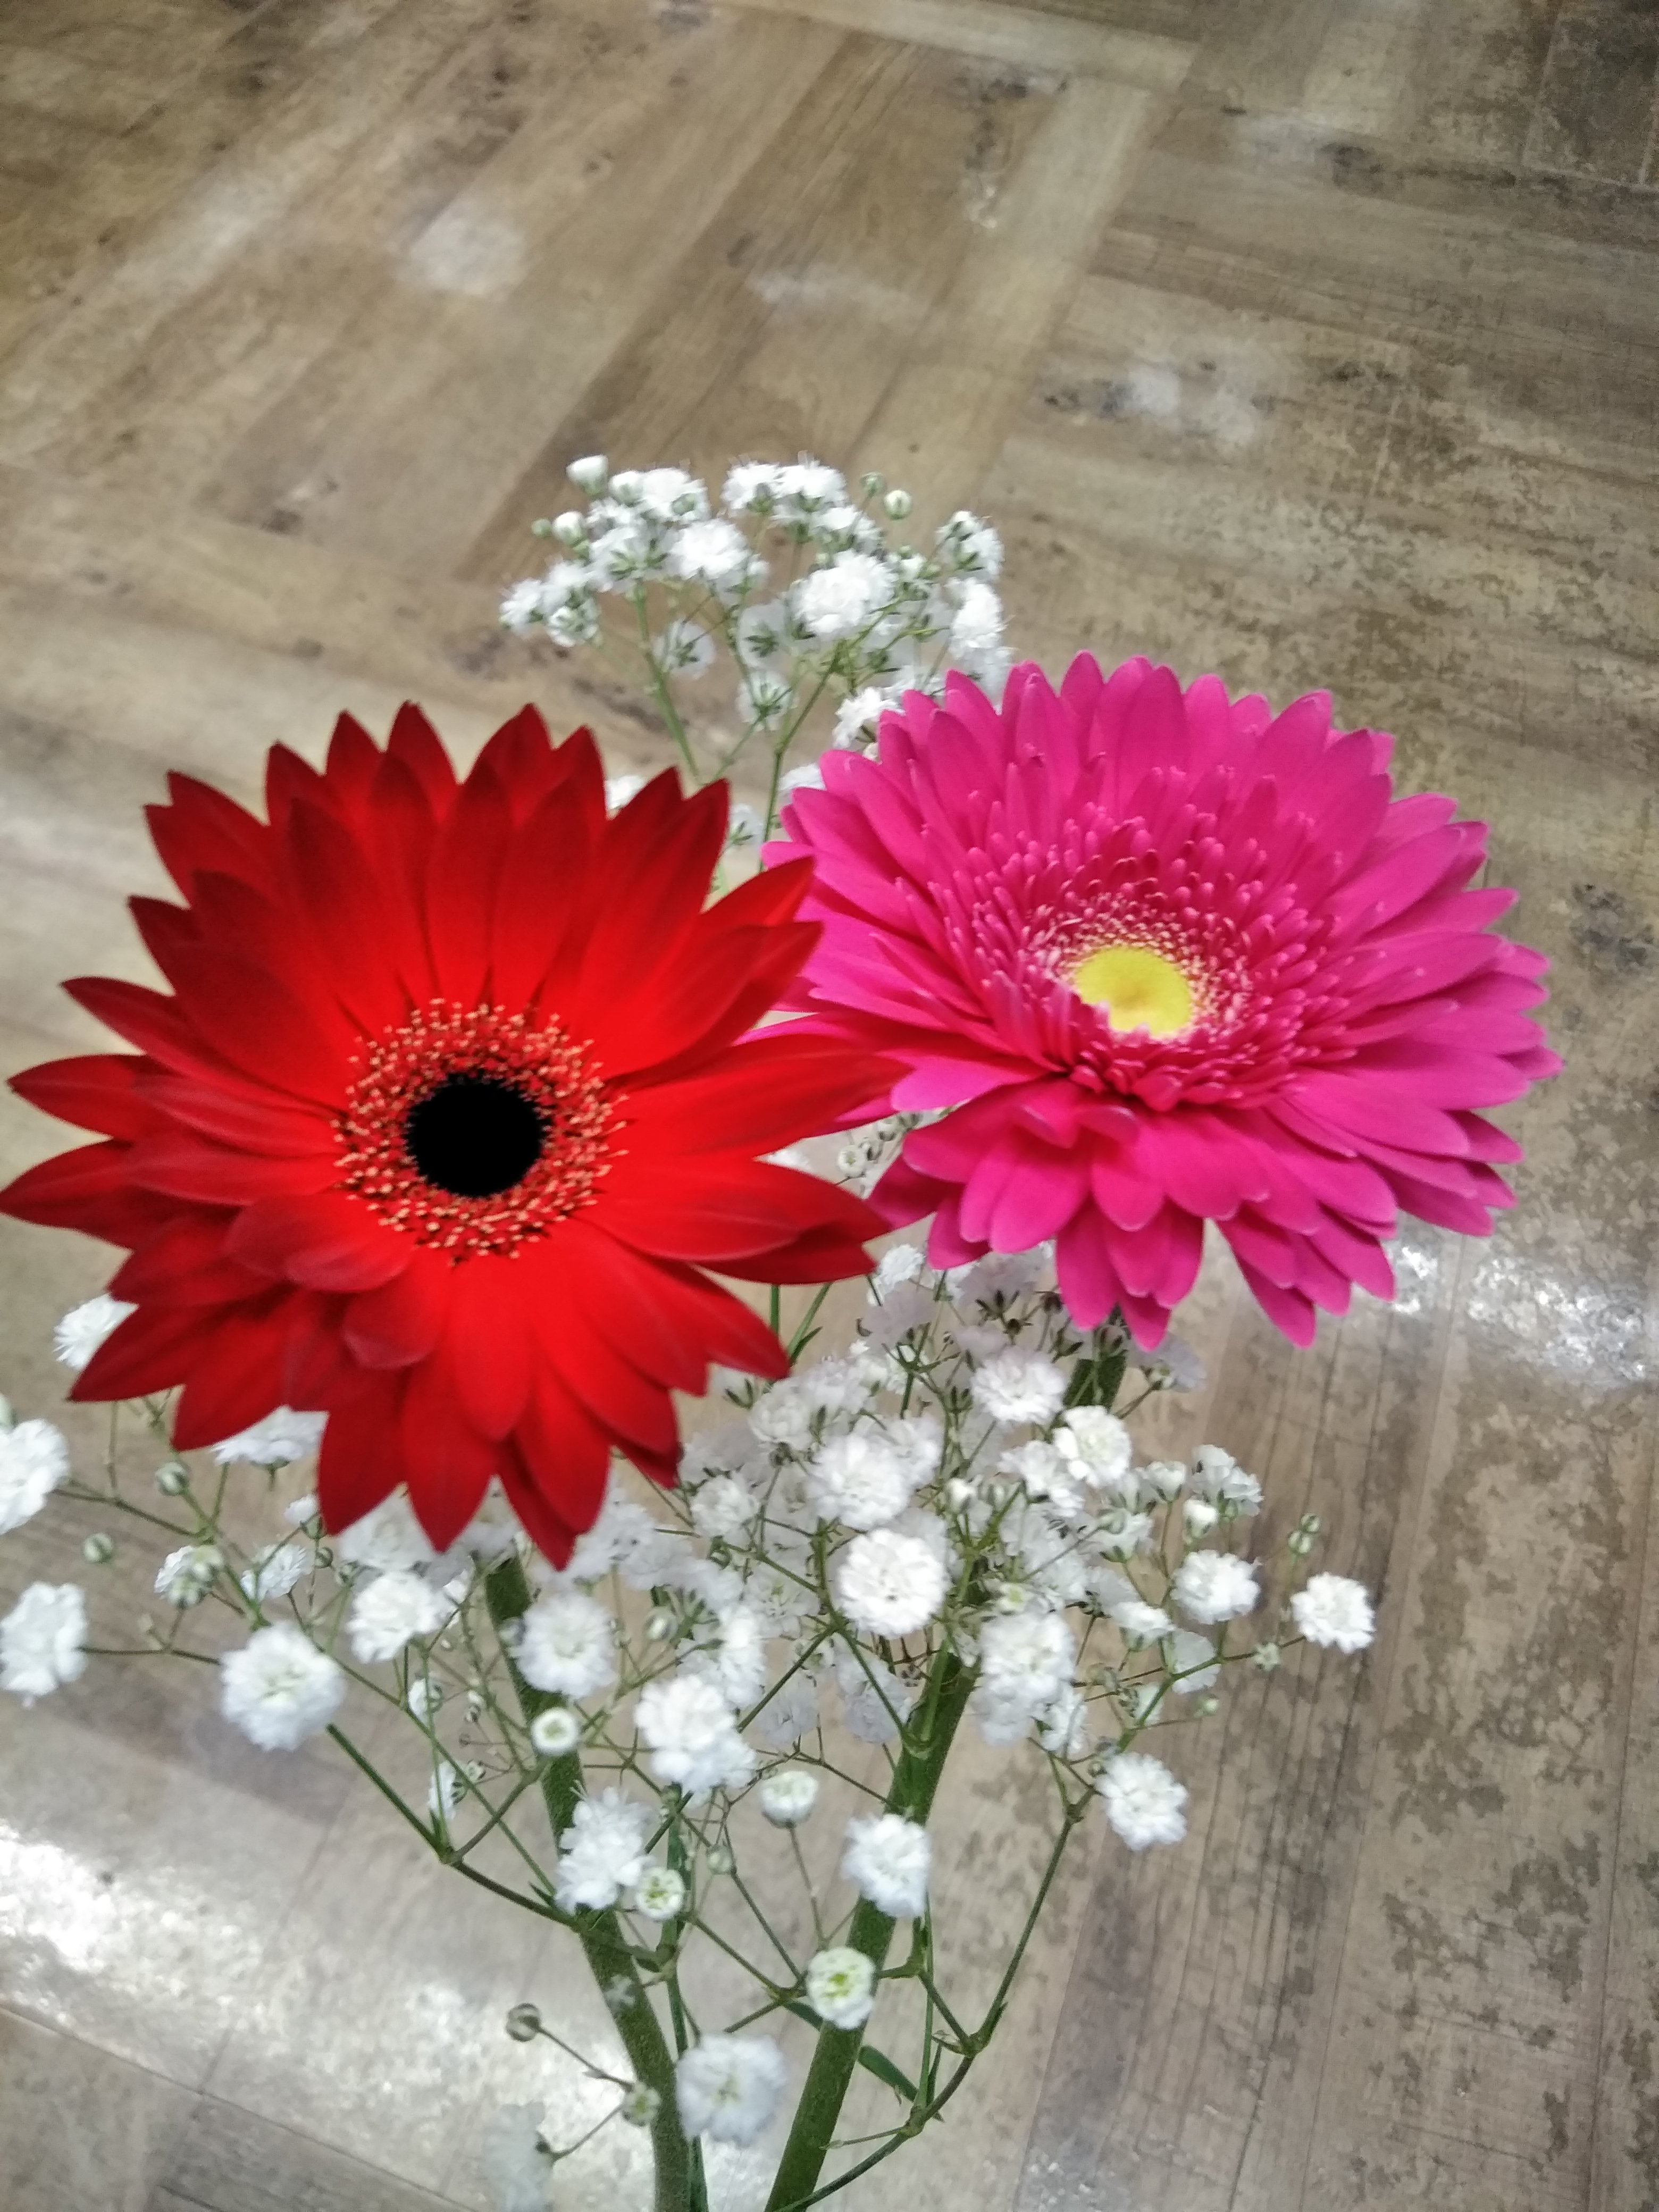 札幌 花屋 札幌市北区のお花屋さん 花だより あらゆる用途に合わせたお花をプロデュース致します ガーベラ かすみ草のセット花